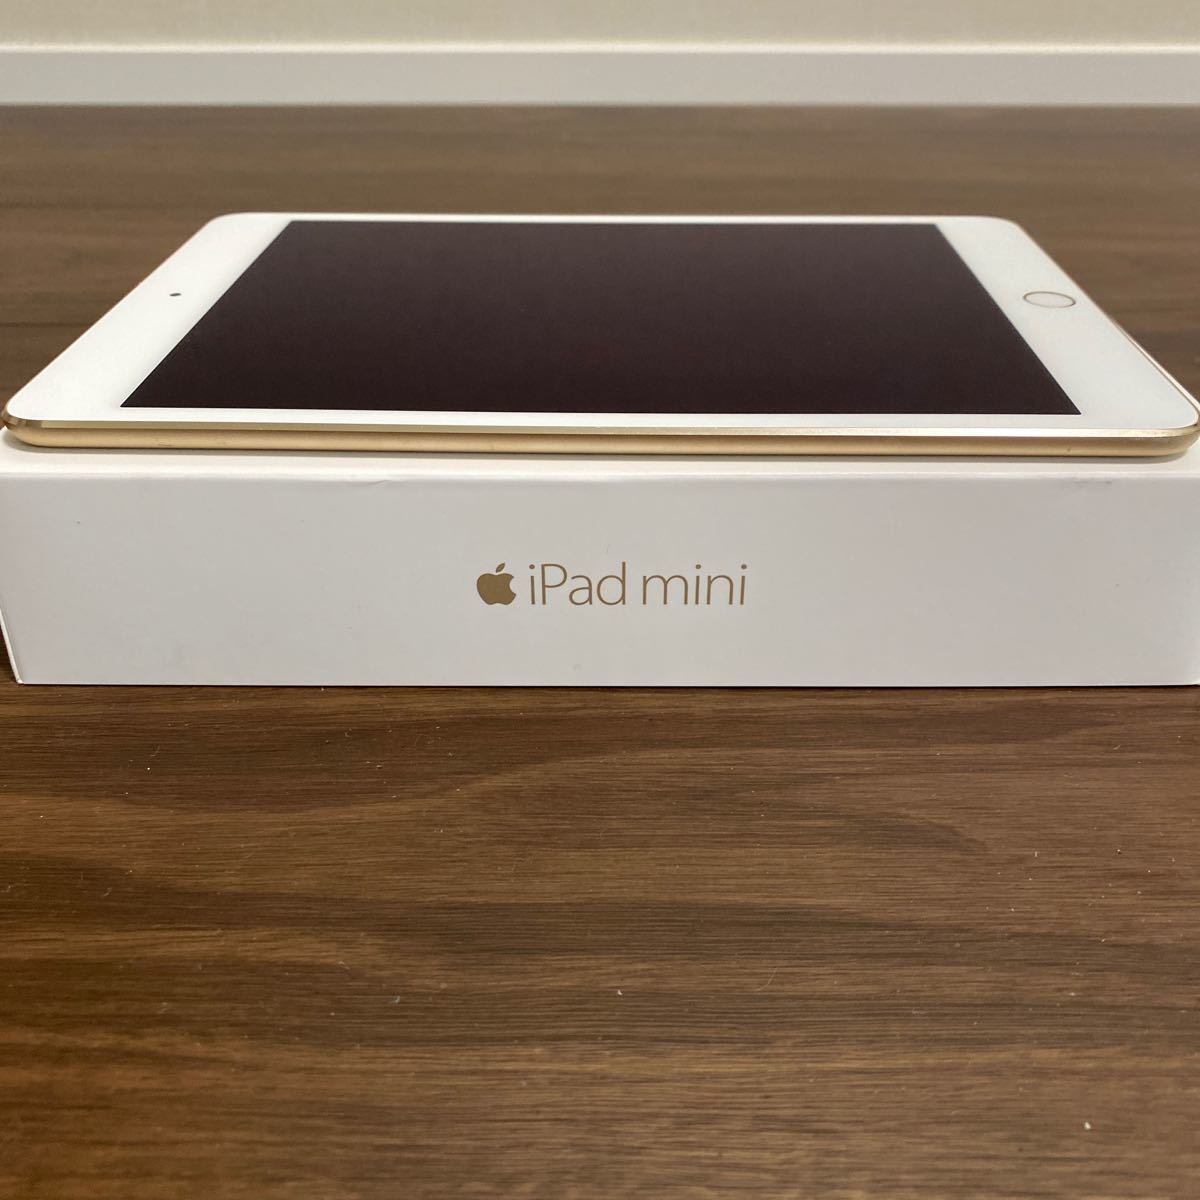 iPad mini 4 Wi-Fi 16GB ゴールド